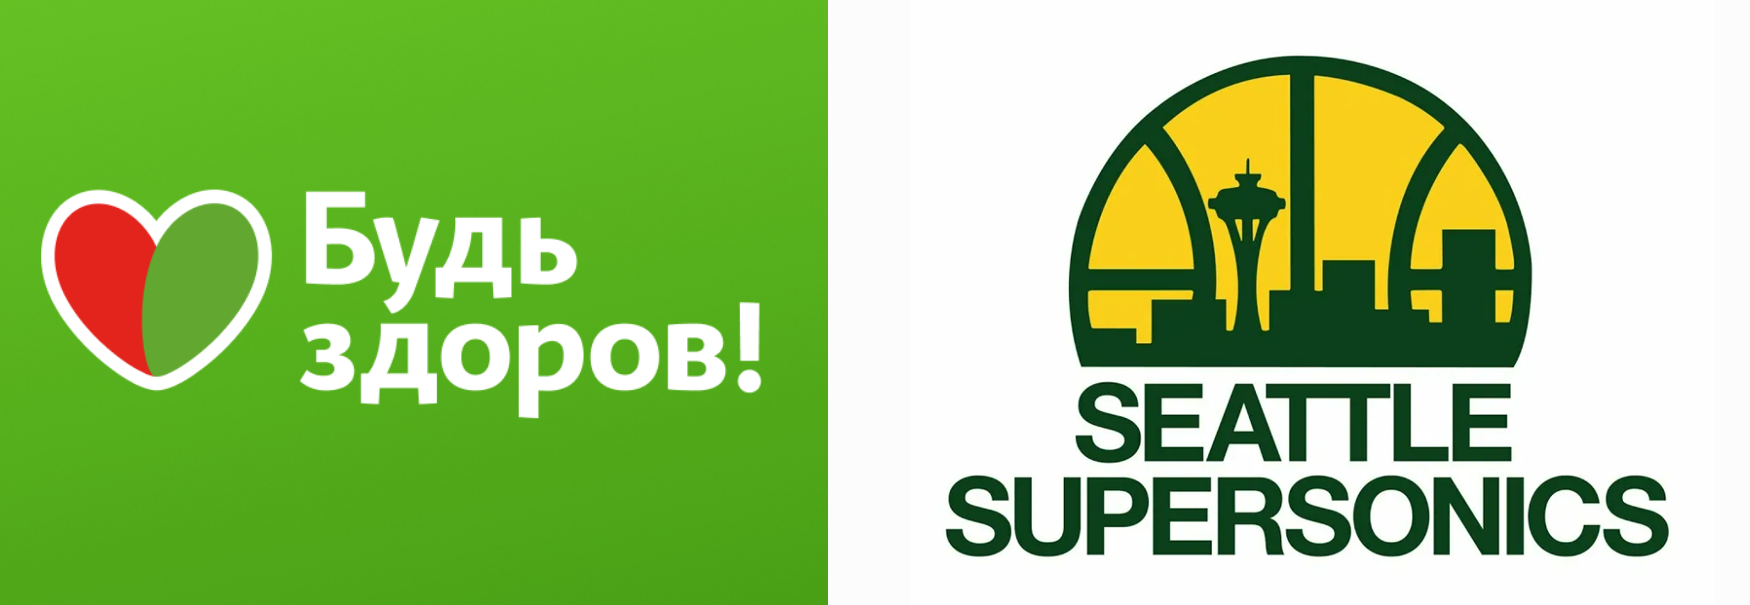 Логотипы сети аптек «Будь здоров» и американского баскетбольного  клуба Seattle Supersonics